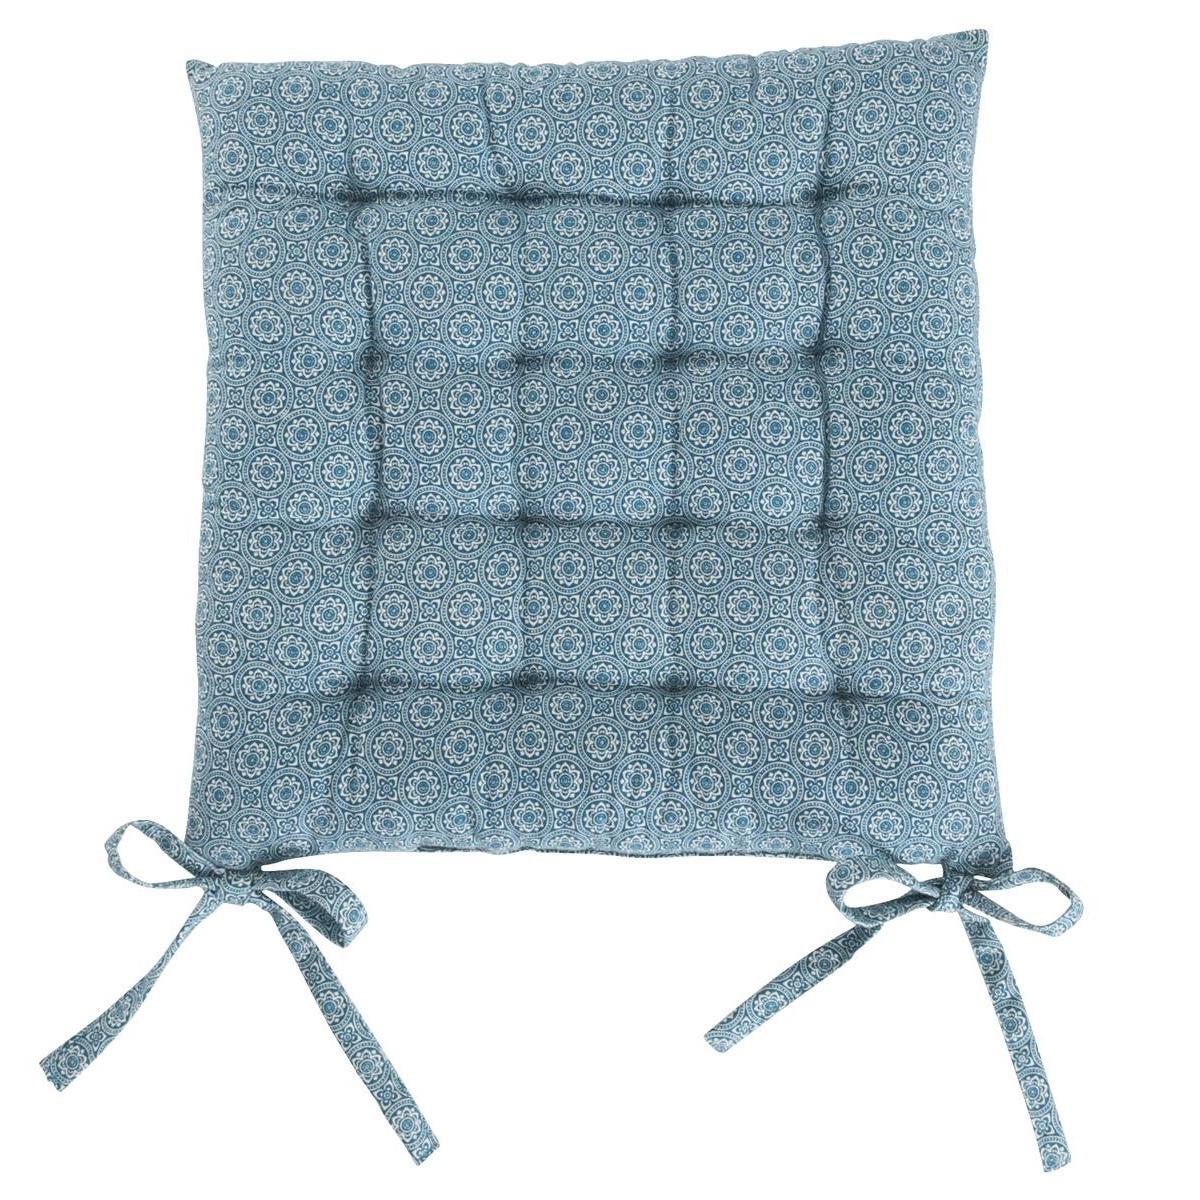 Galette de chaise - 40 x 40 cm - Bleu